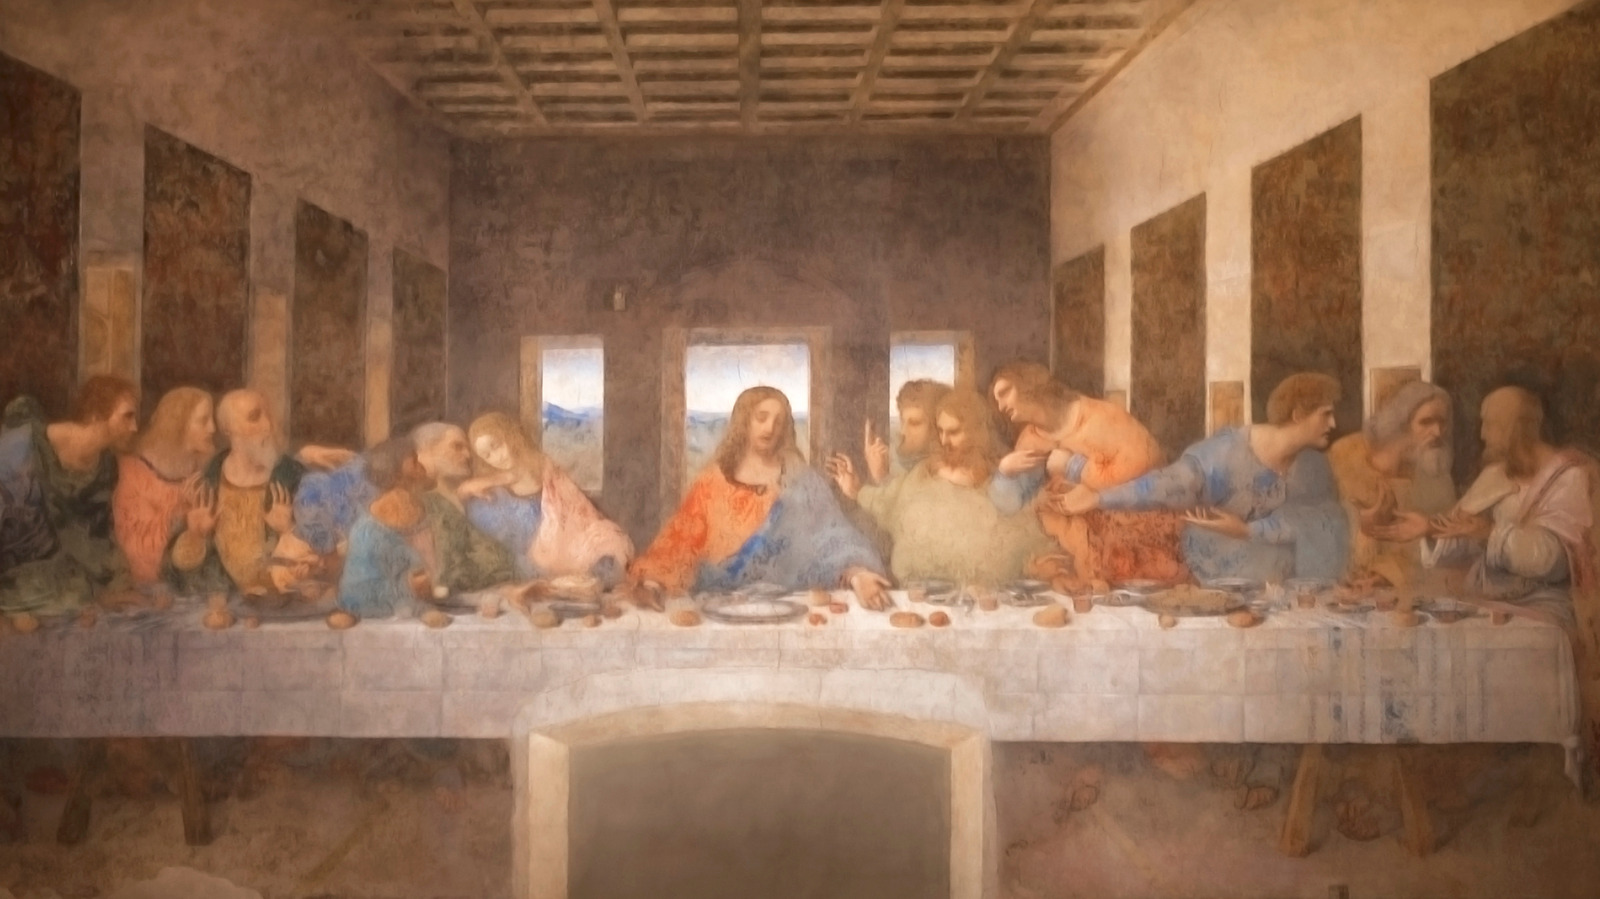 1. "The Last Supper" by Leonardo da Vinci - wide 8